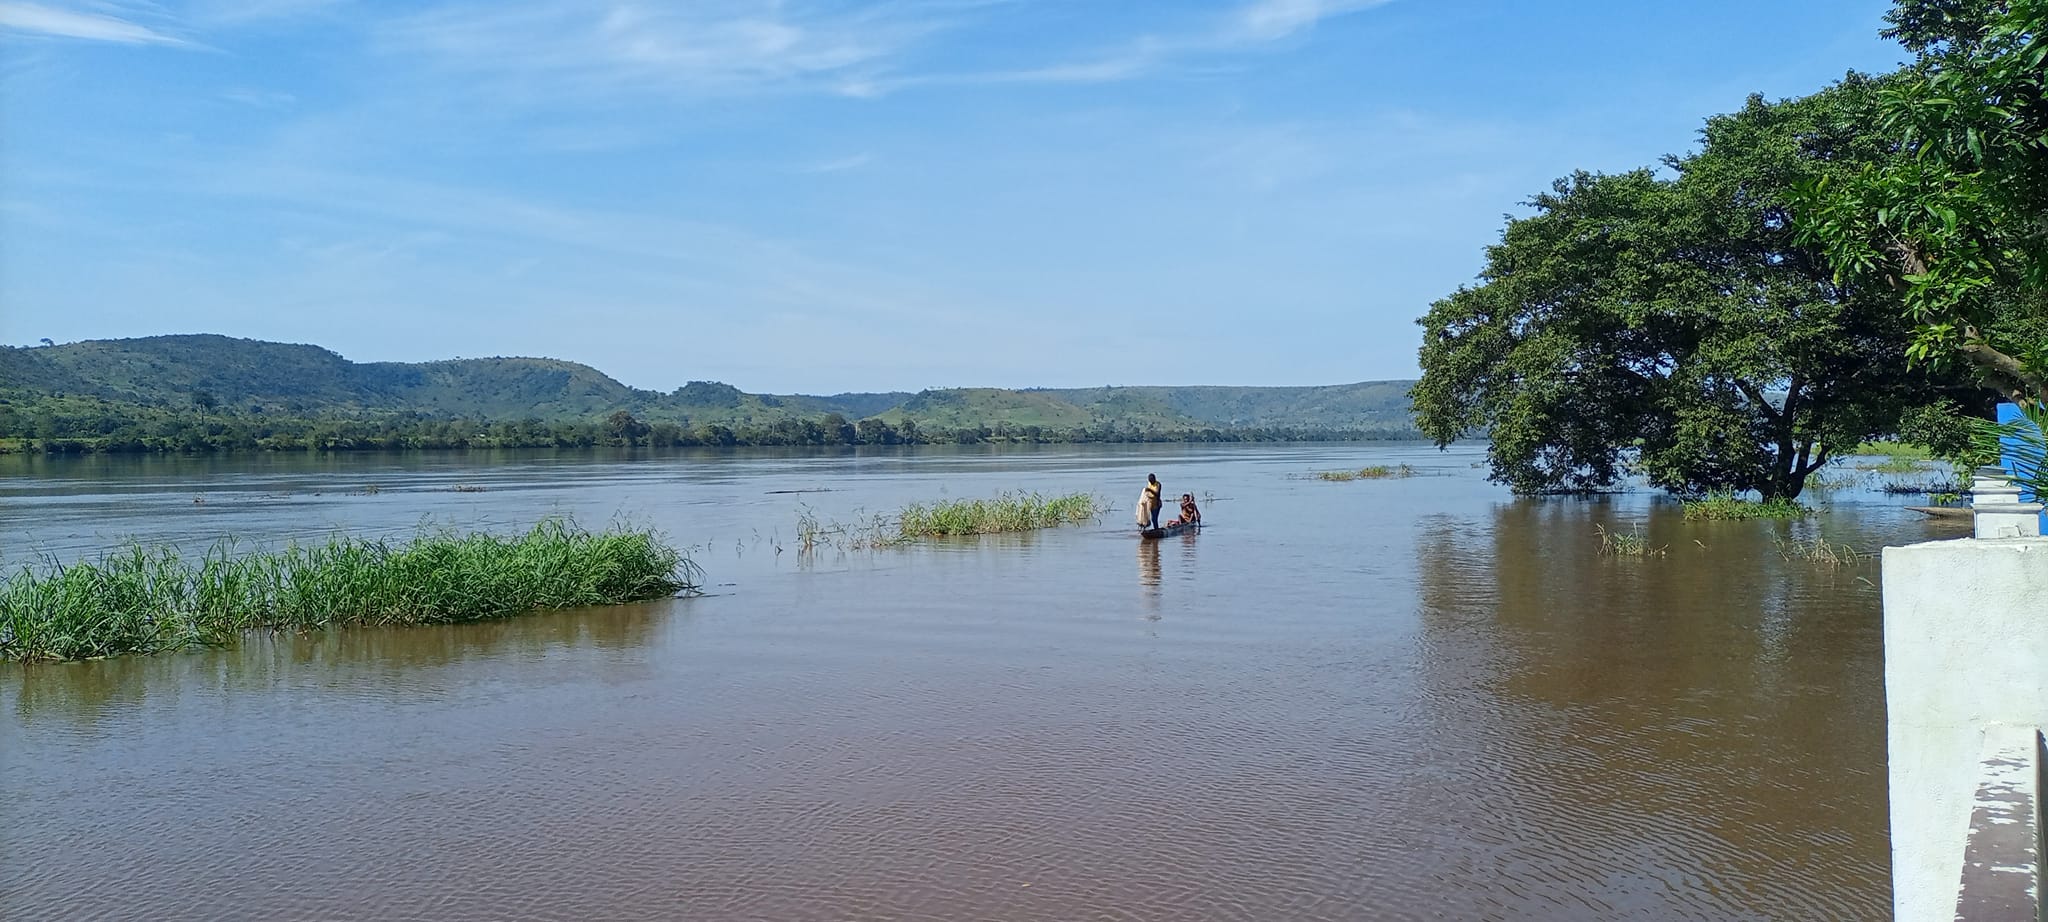 Centrafrique : le bilan du naufrage sur la rivière Mpoko s’alourdit et les recherches se poursuivent